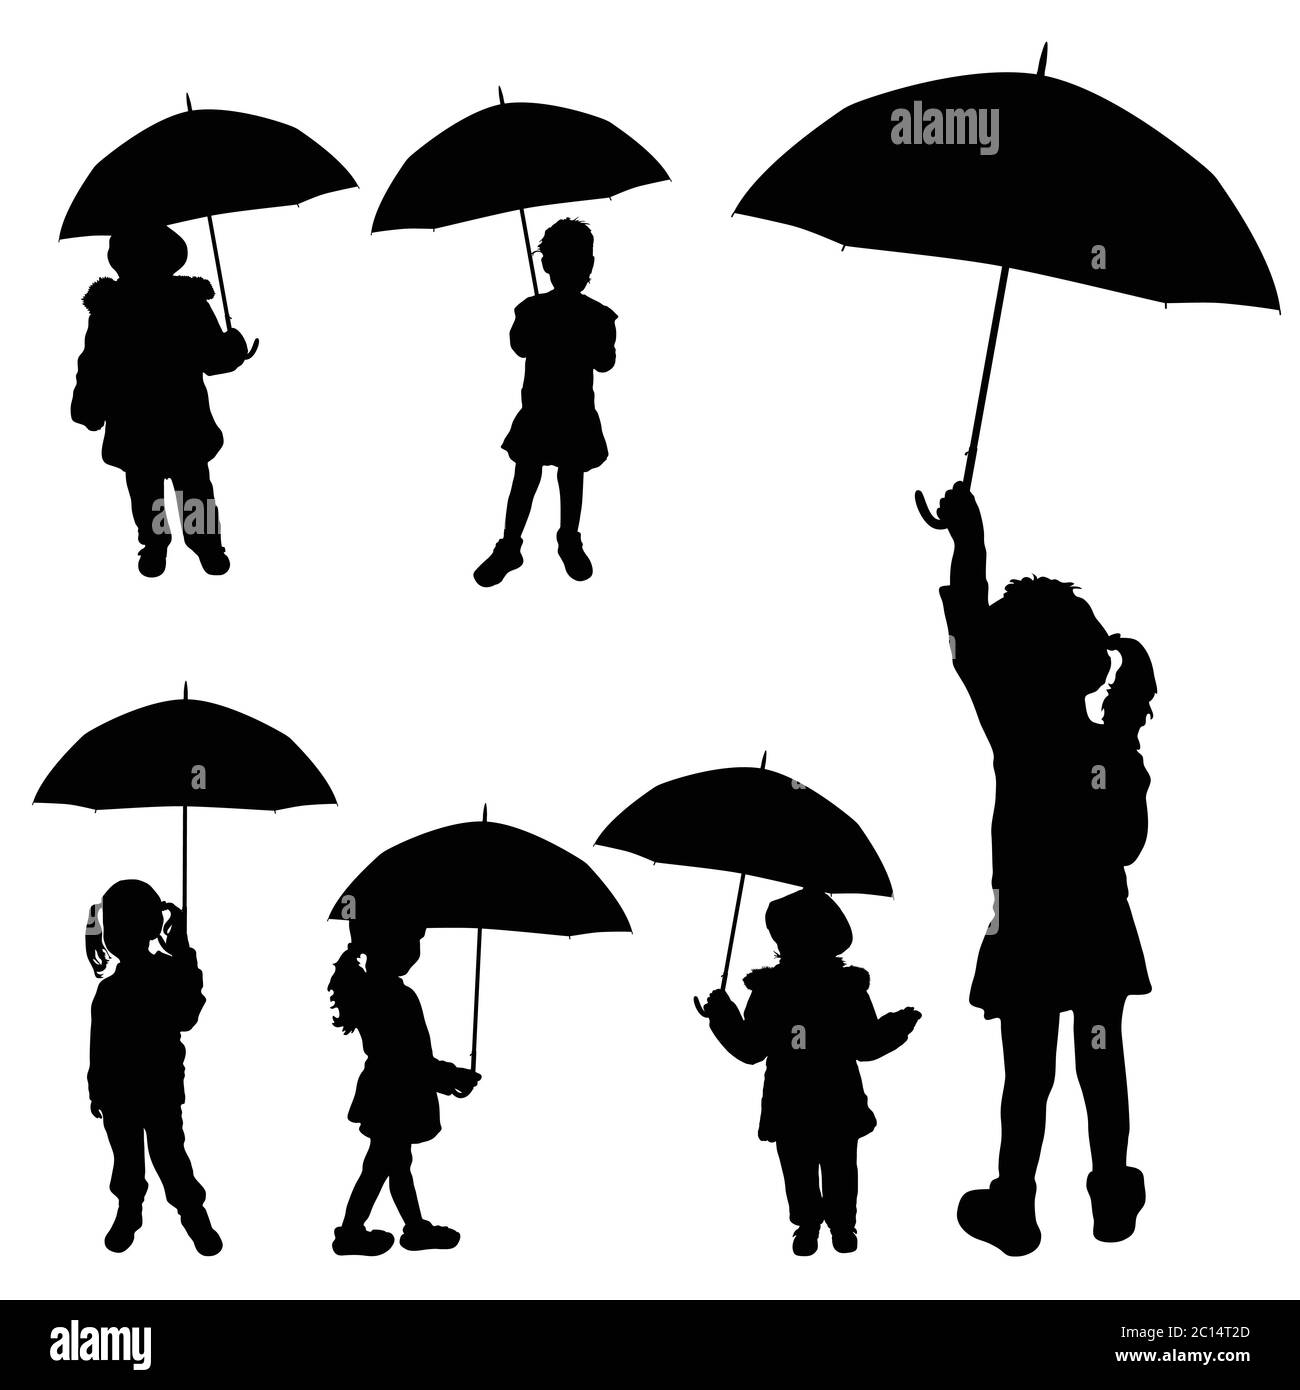 Kind Mädchen hält Regenschirm Silhouette auf weiß Stock-Vektorgrafik - Alamy